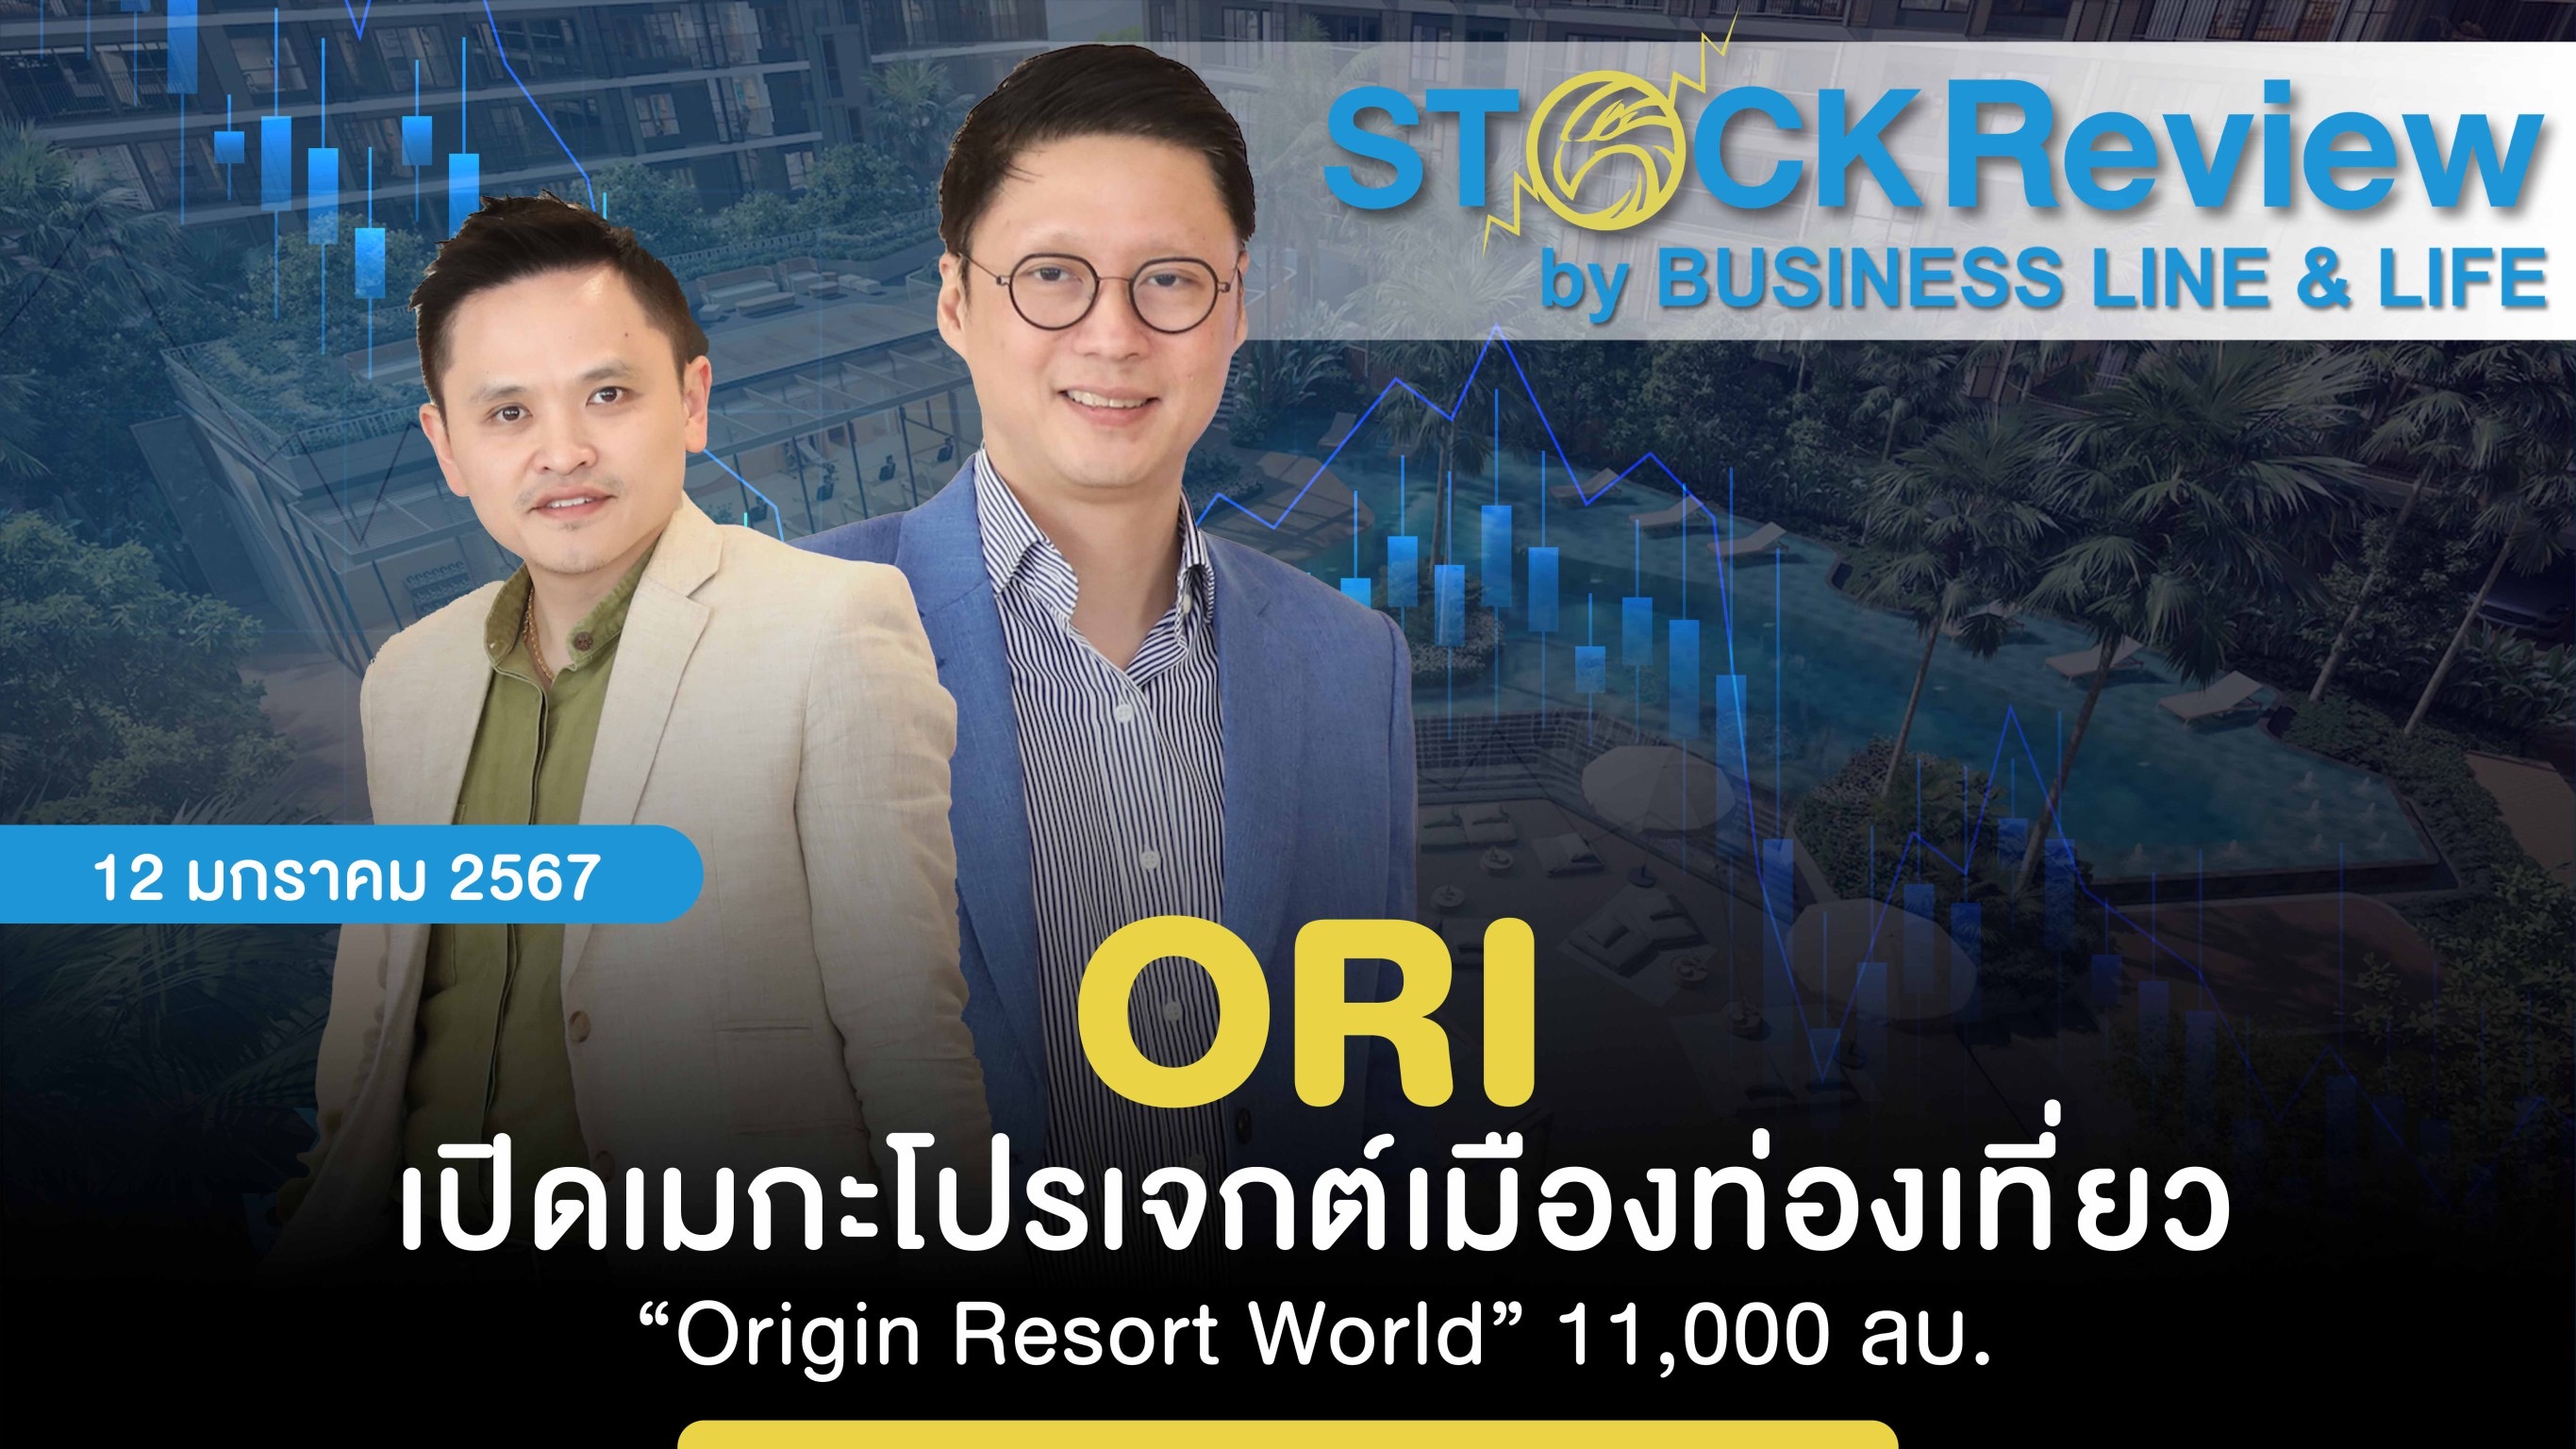 ORI เปิดเมกะโปรเจกต์เมืองท่องเที่ยว “Origin Resort World” 11,000 ลบ.  ผสานคอนโด-โรงแรม-วิลล่า- กลางภูเก็ต-เขาใหญ่ เริ่มขายเฟสแรก ปลาย ม.ค.นี้